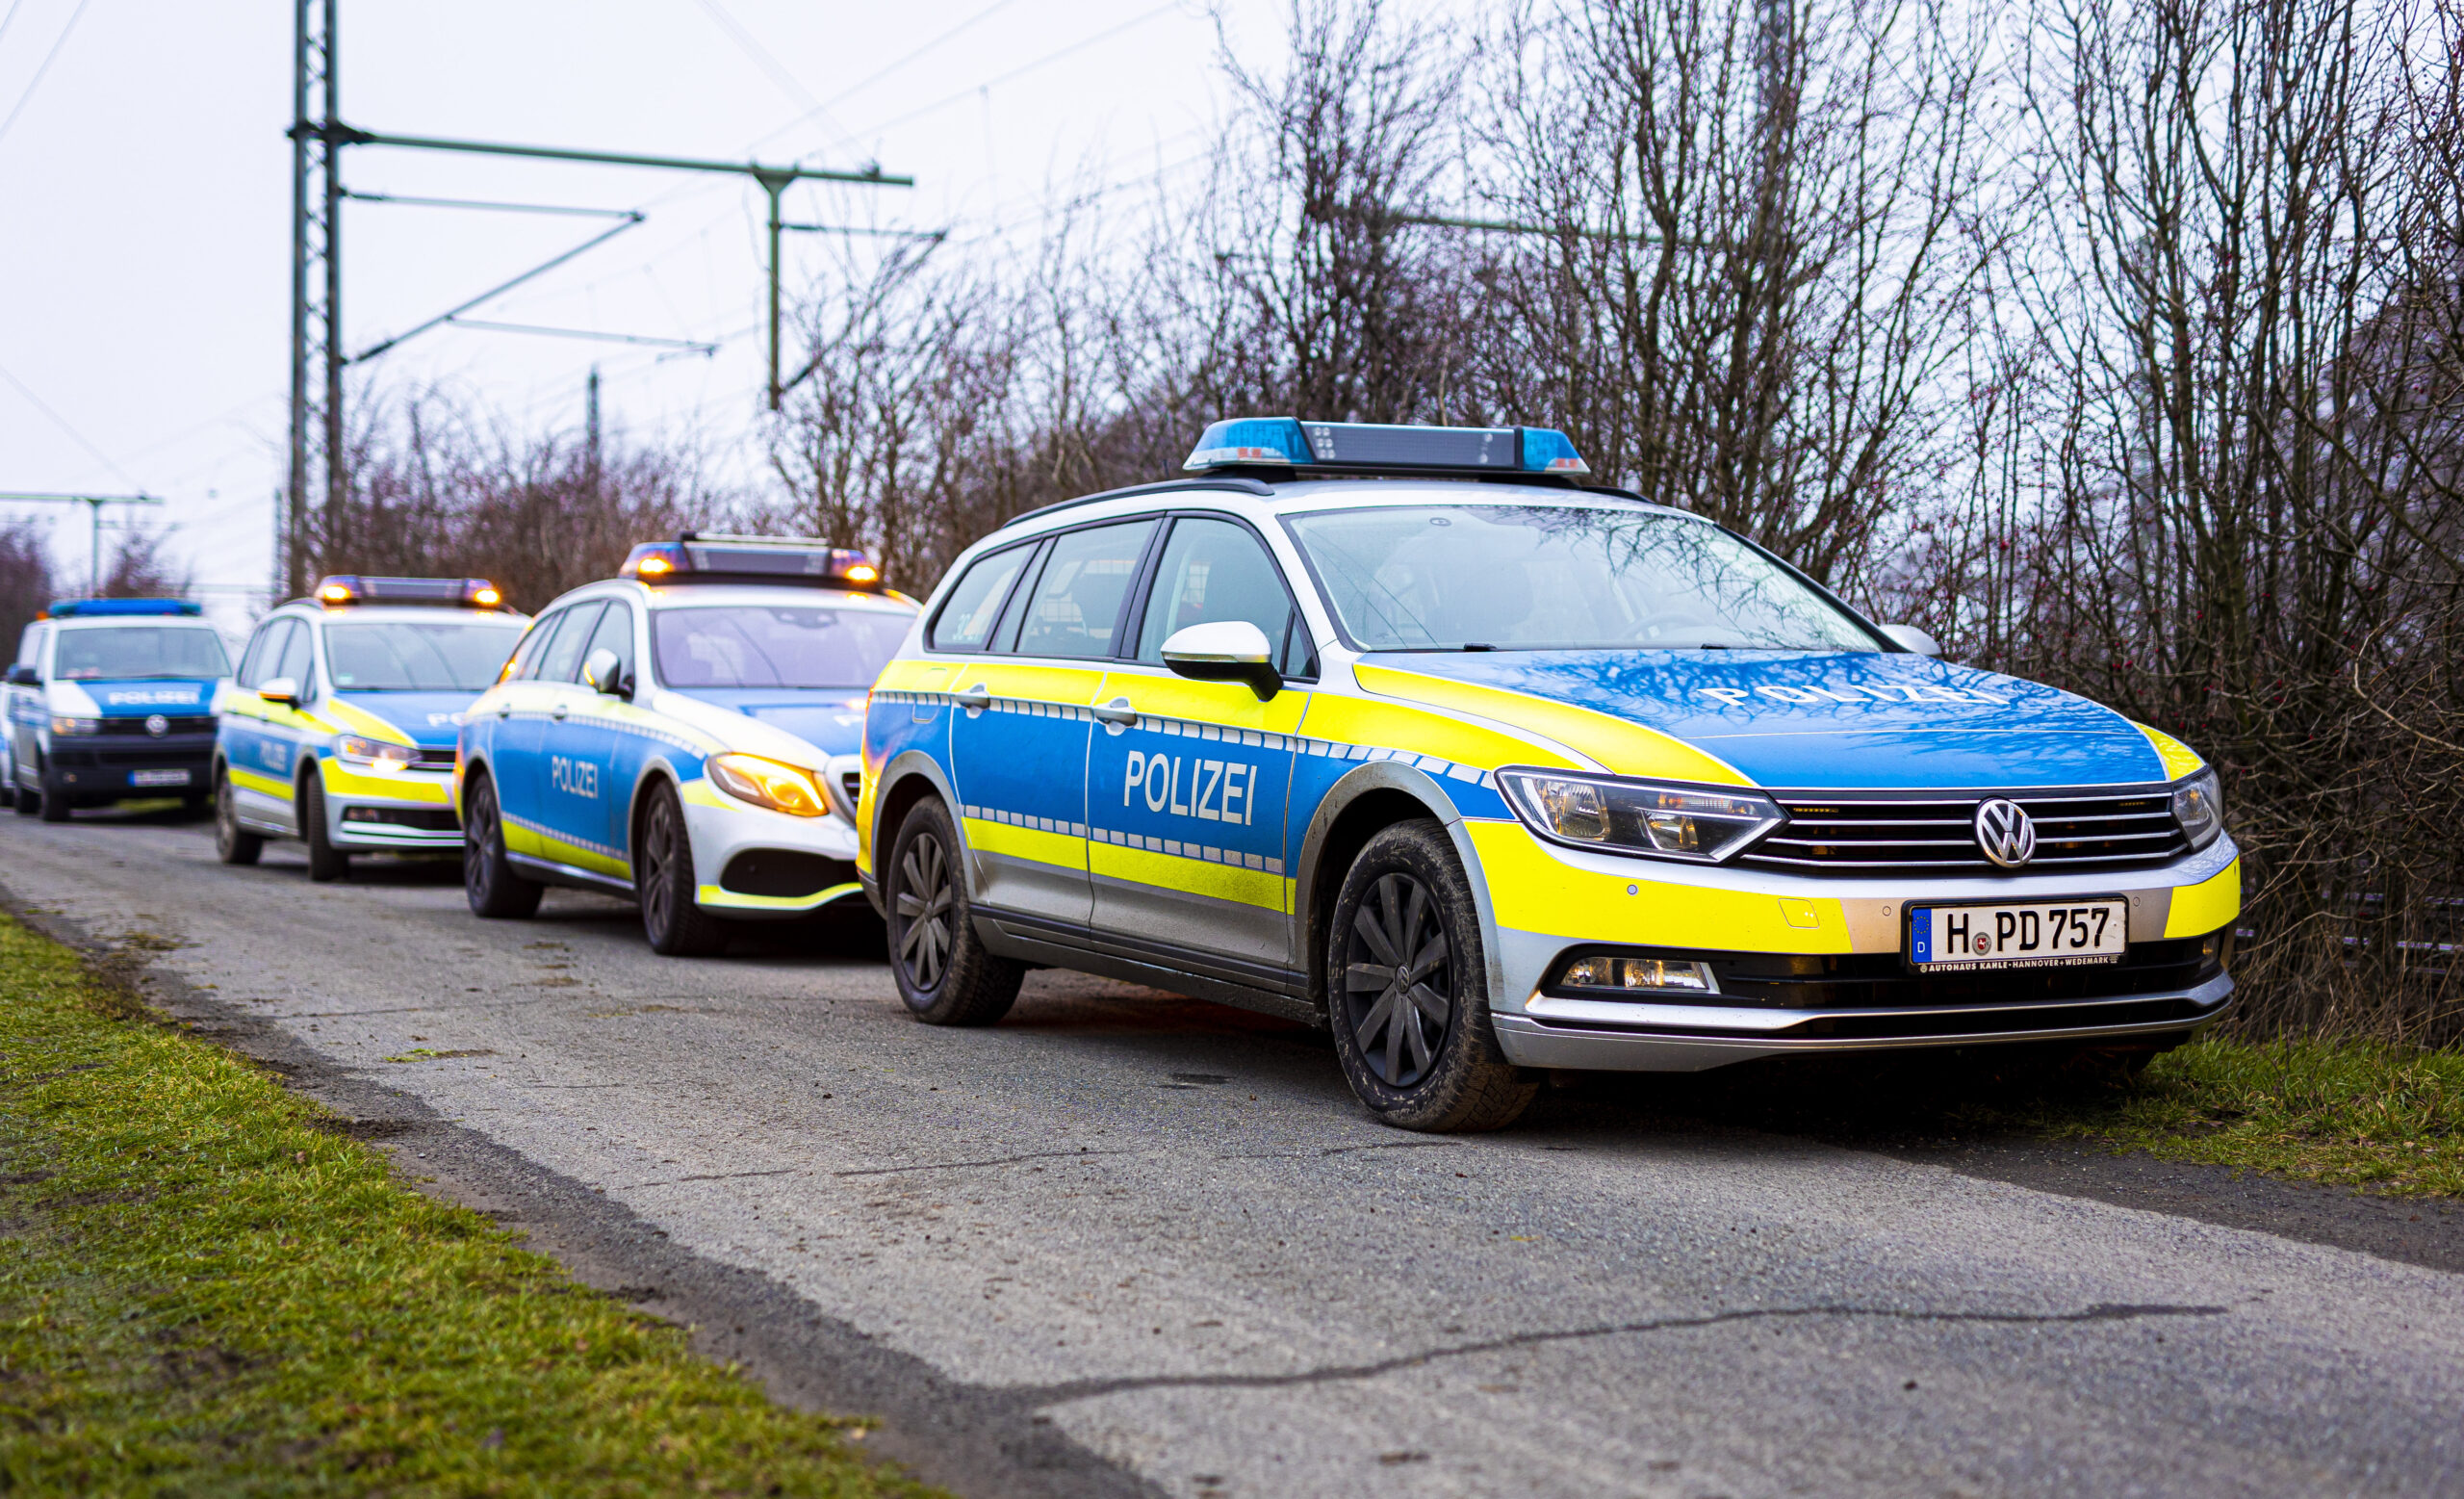 Einsatzfahrzeuge der Polizei Hannover stehen am Straßenrand. (Symbolbild)